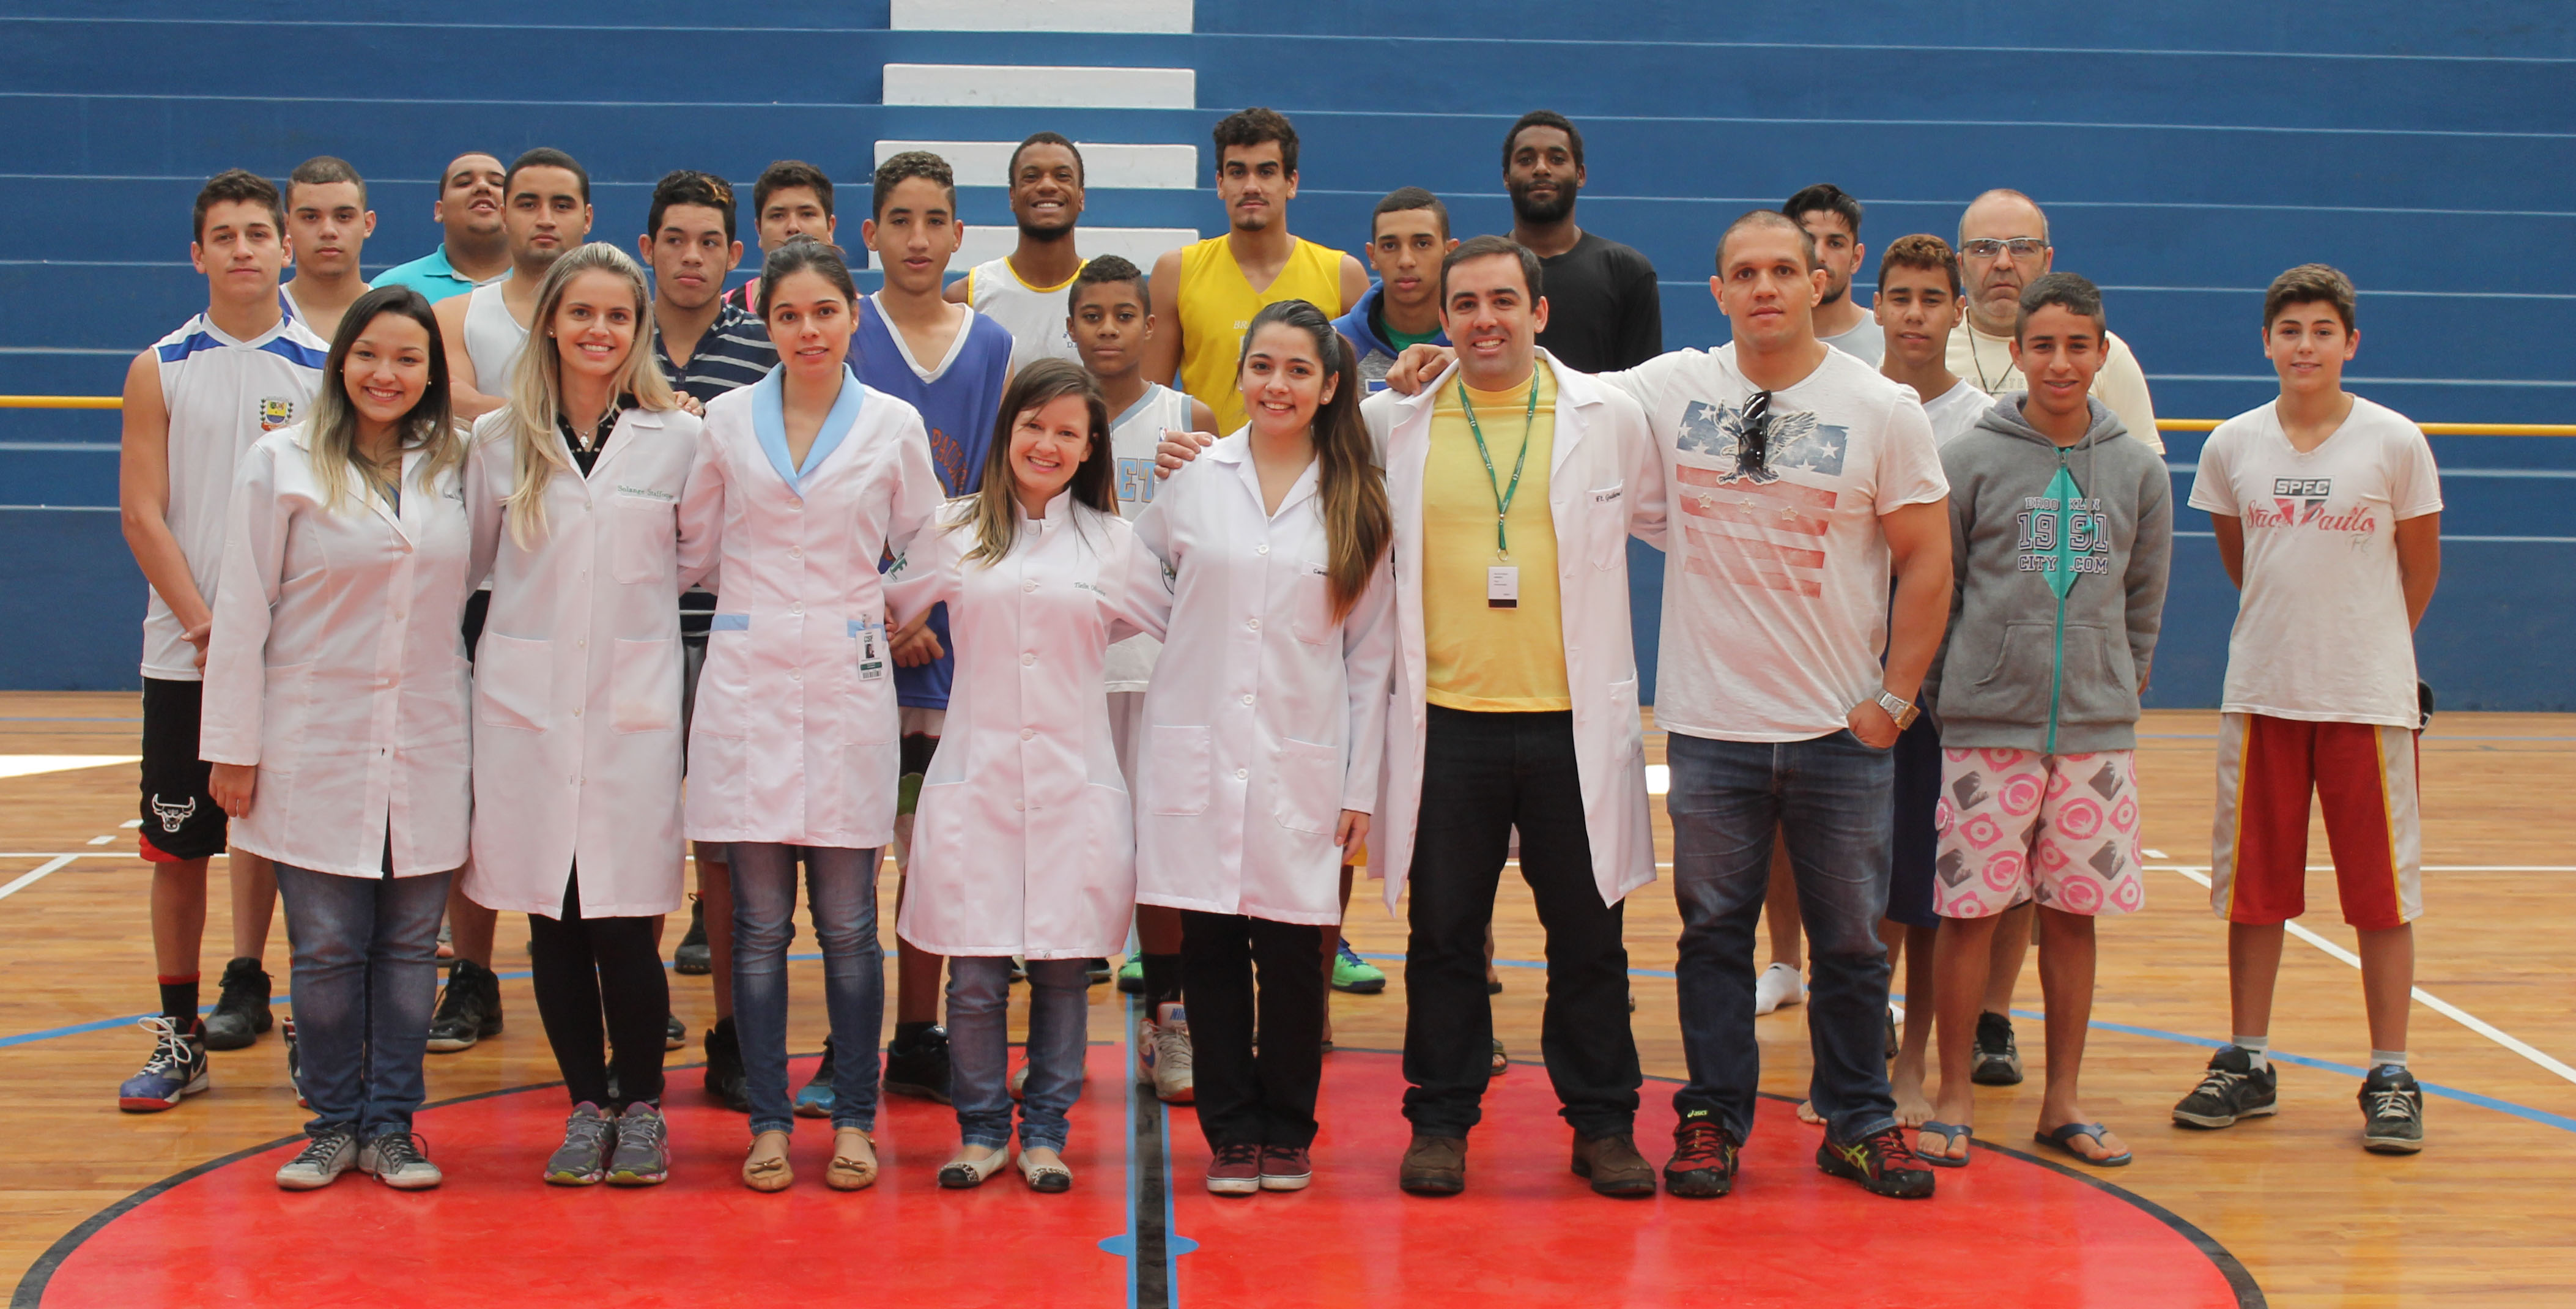 Alunos do Curso de Fisioterapia promovem Ação de Fisioterapia Preventiva para a equipe de basquete de Bragança Paulista